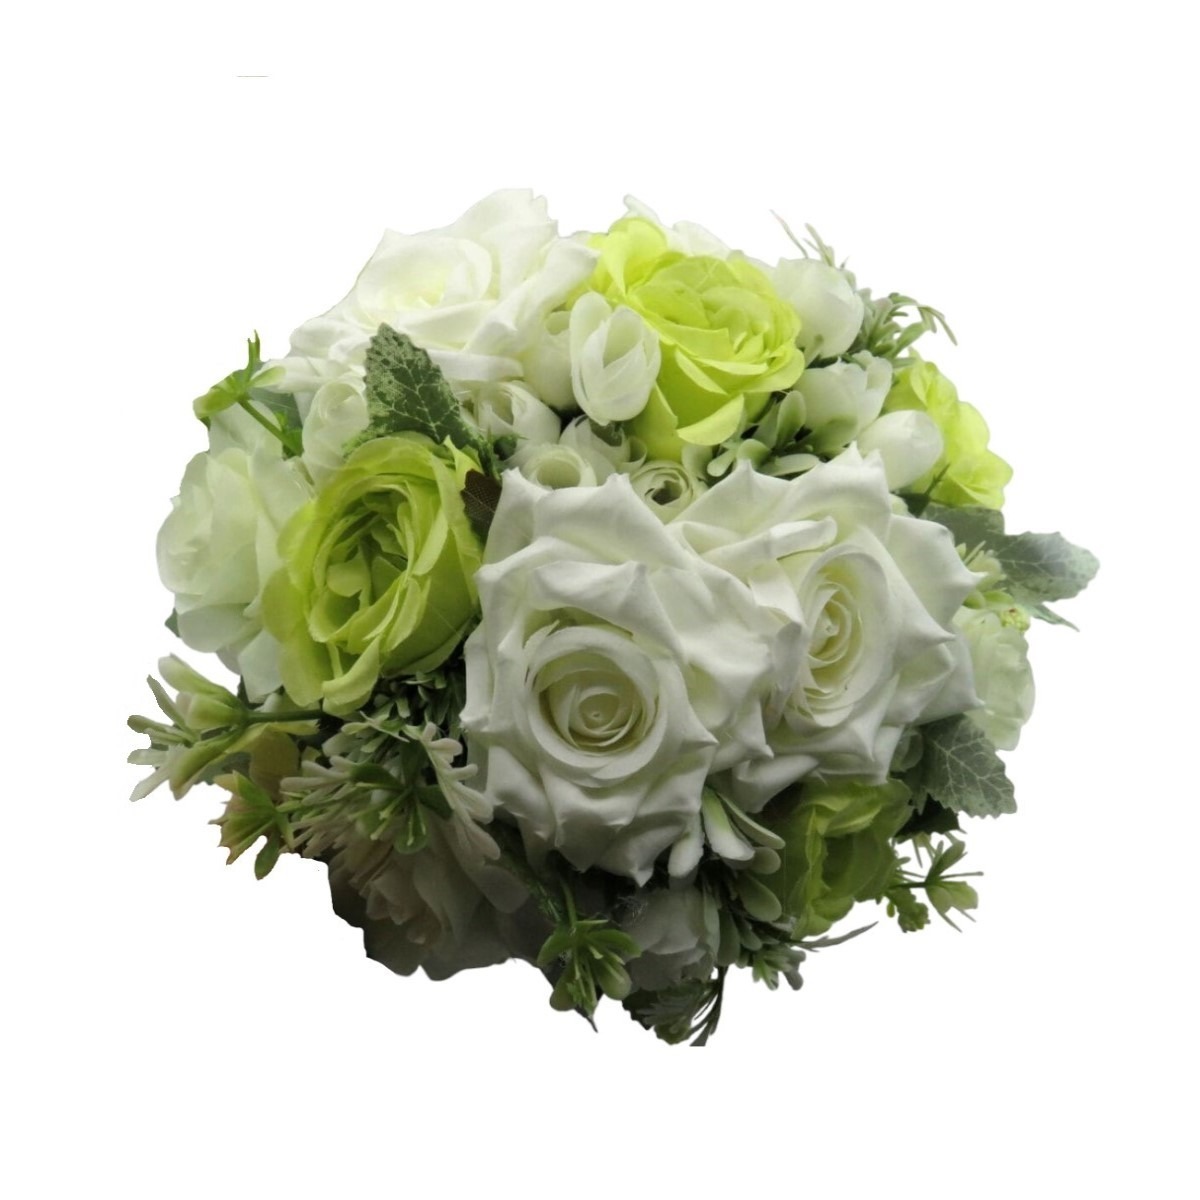 Buchet mireasanasa cu flori de matase, verde&alb – ILIF310056 (1)